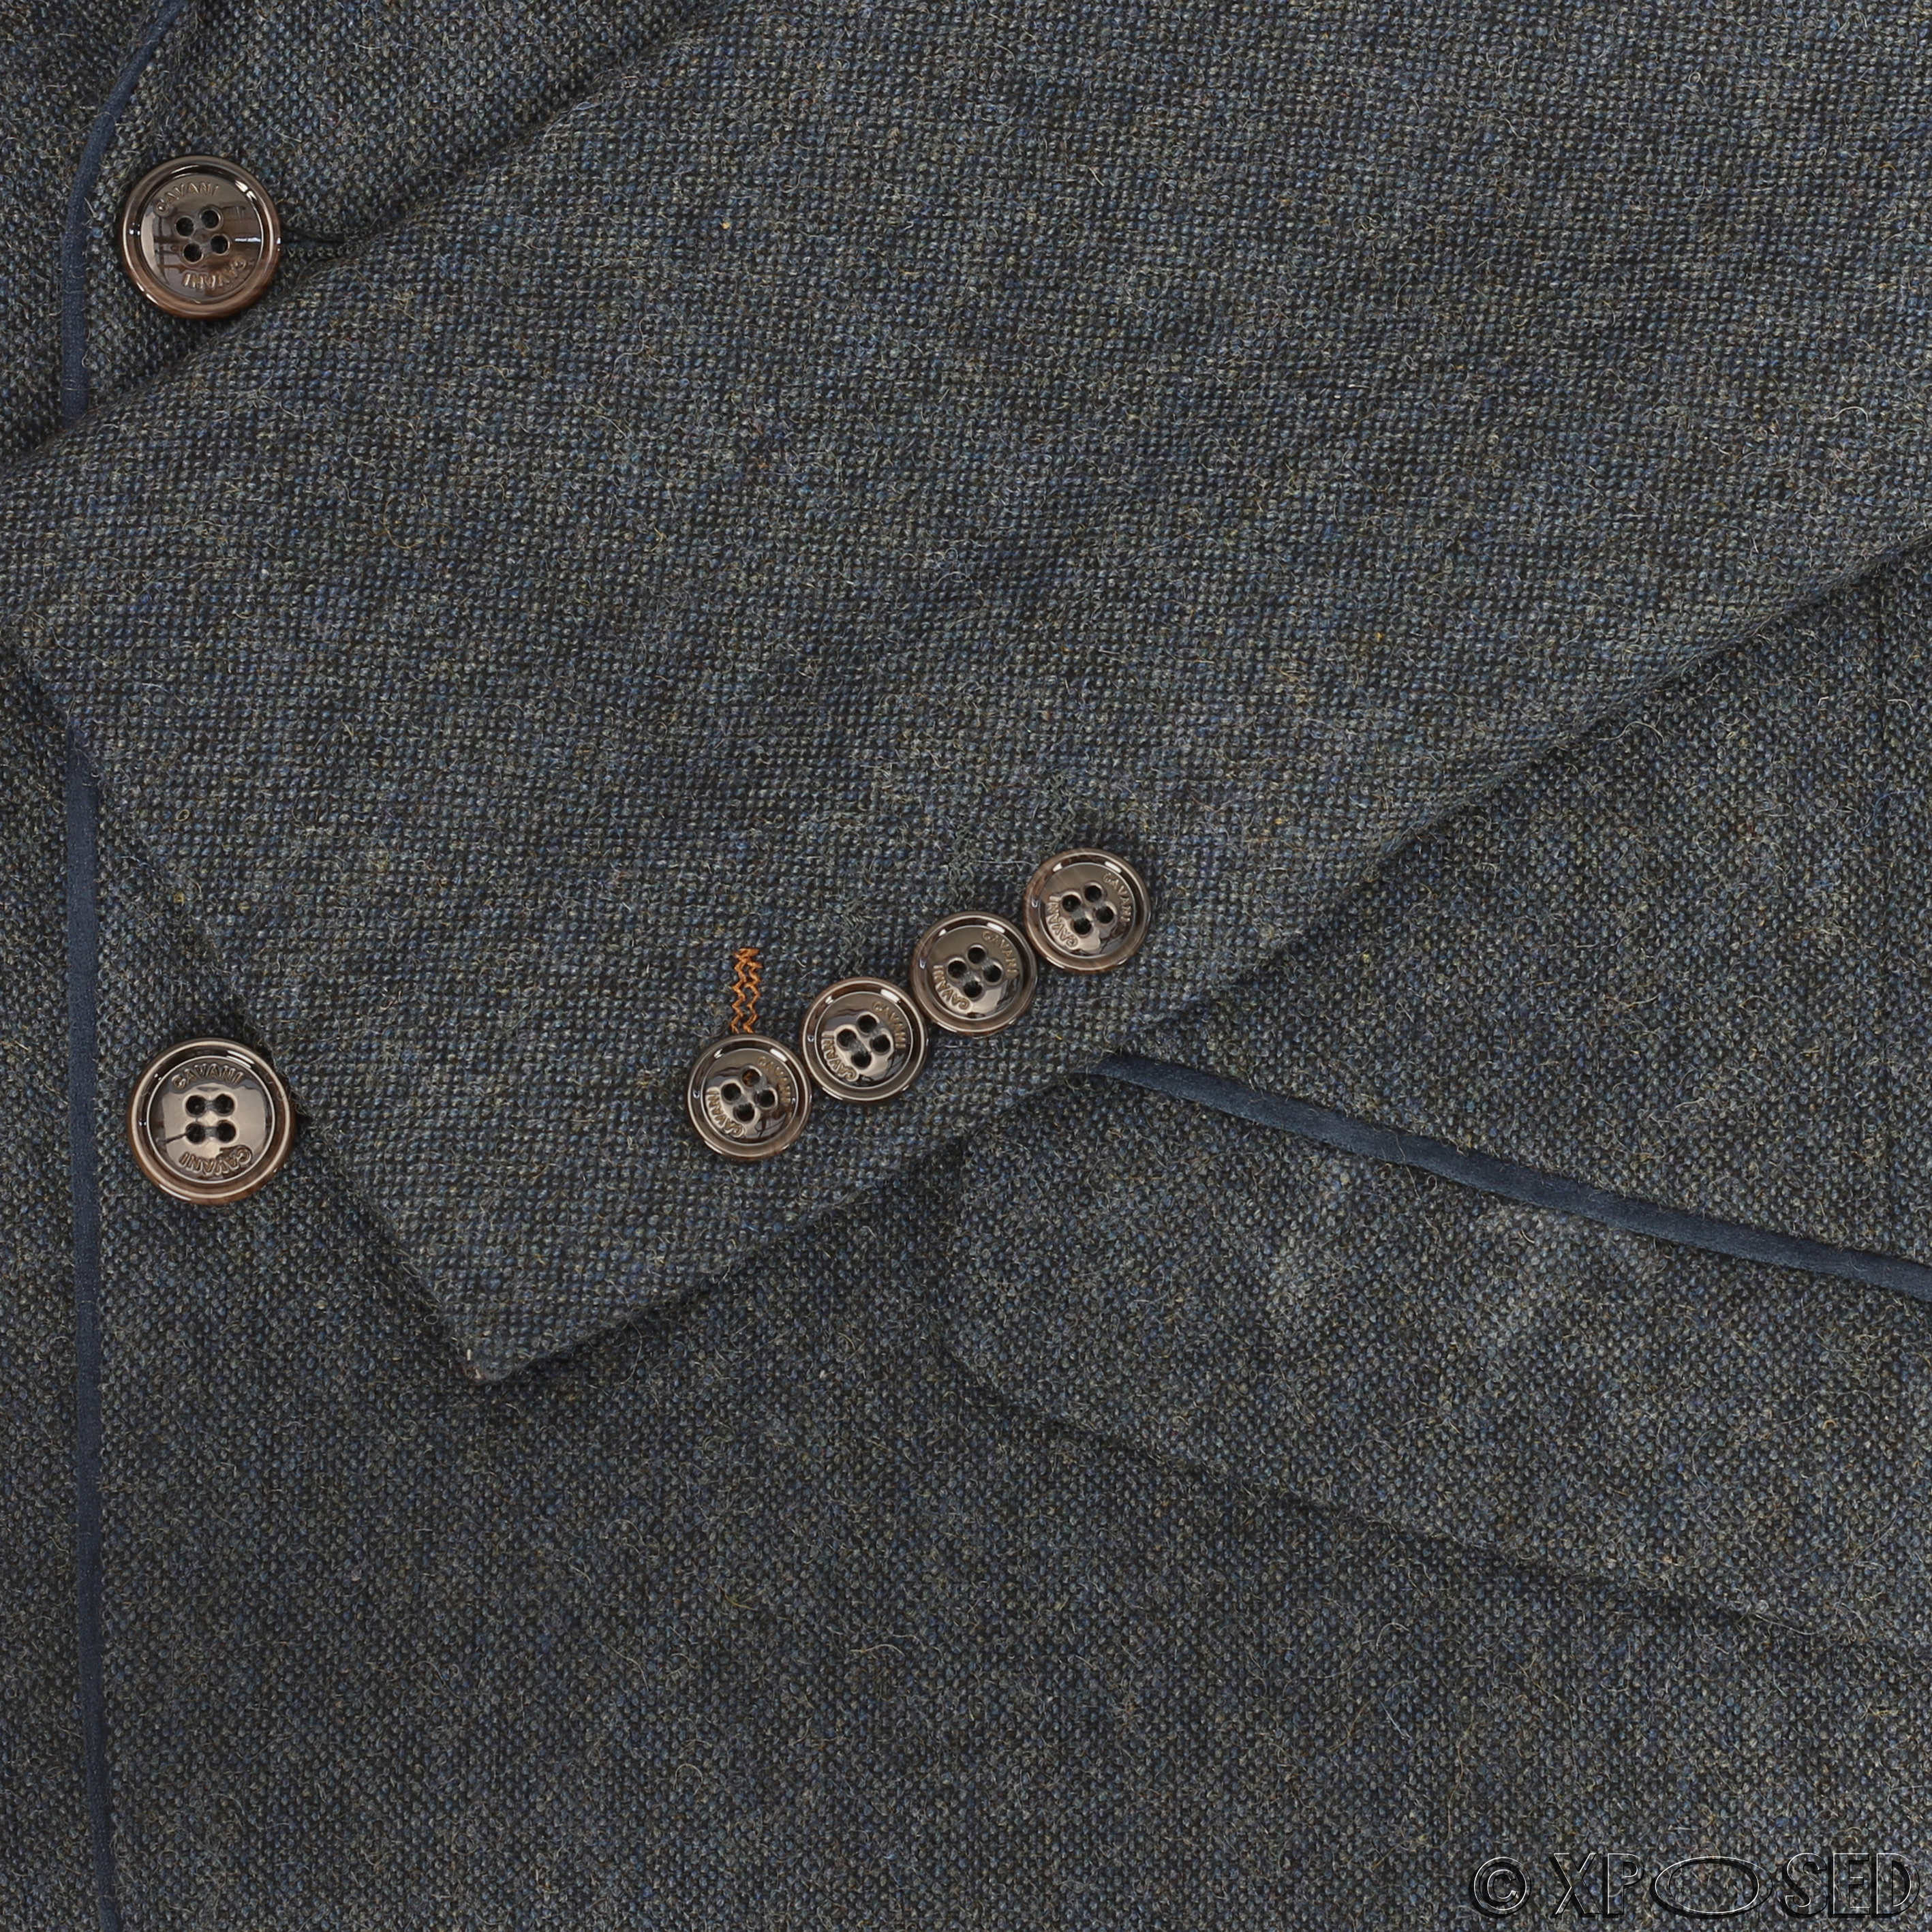 Mens 3 Piece Suit Wool Vintage Herringbone Tweed Retro Tailored Fit ...